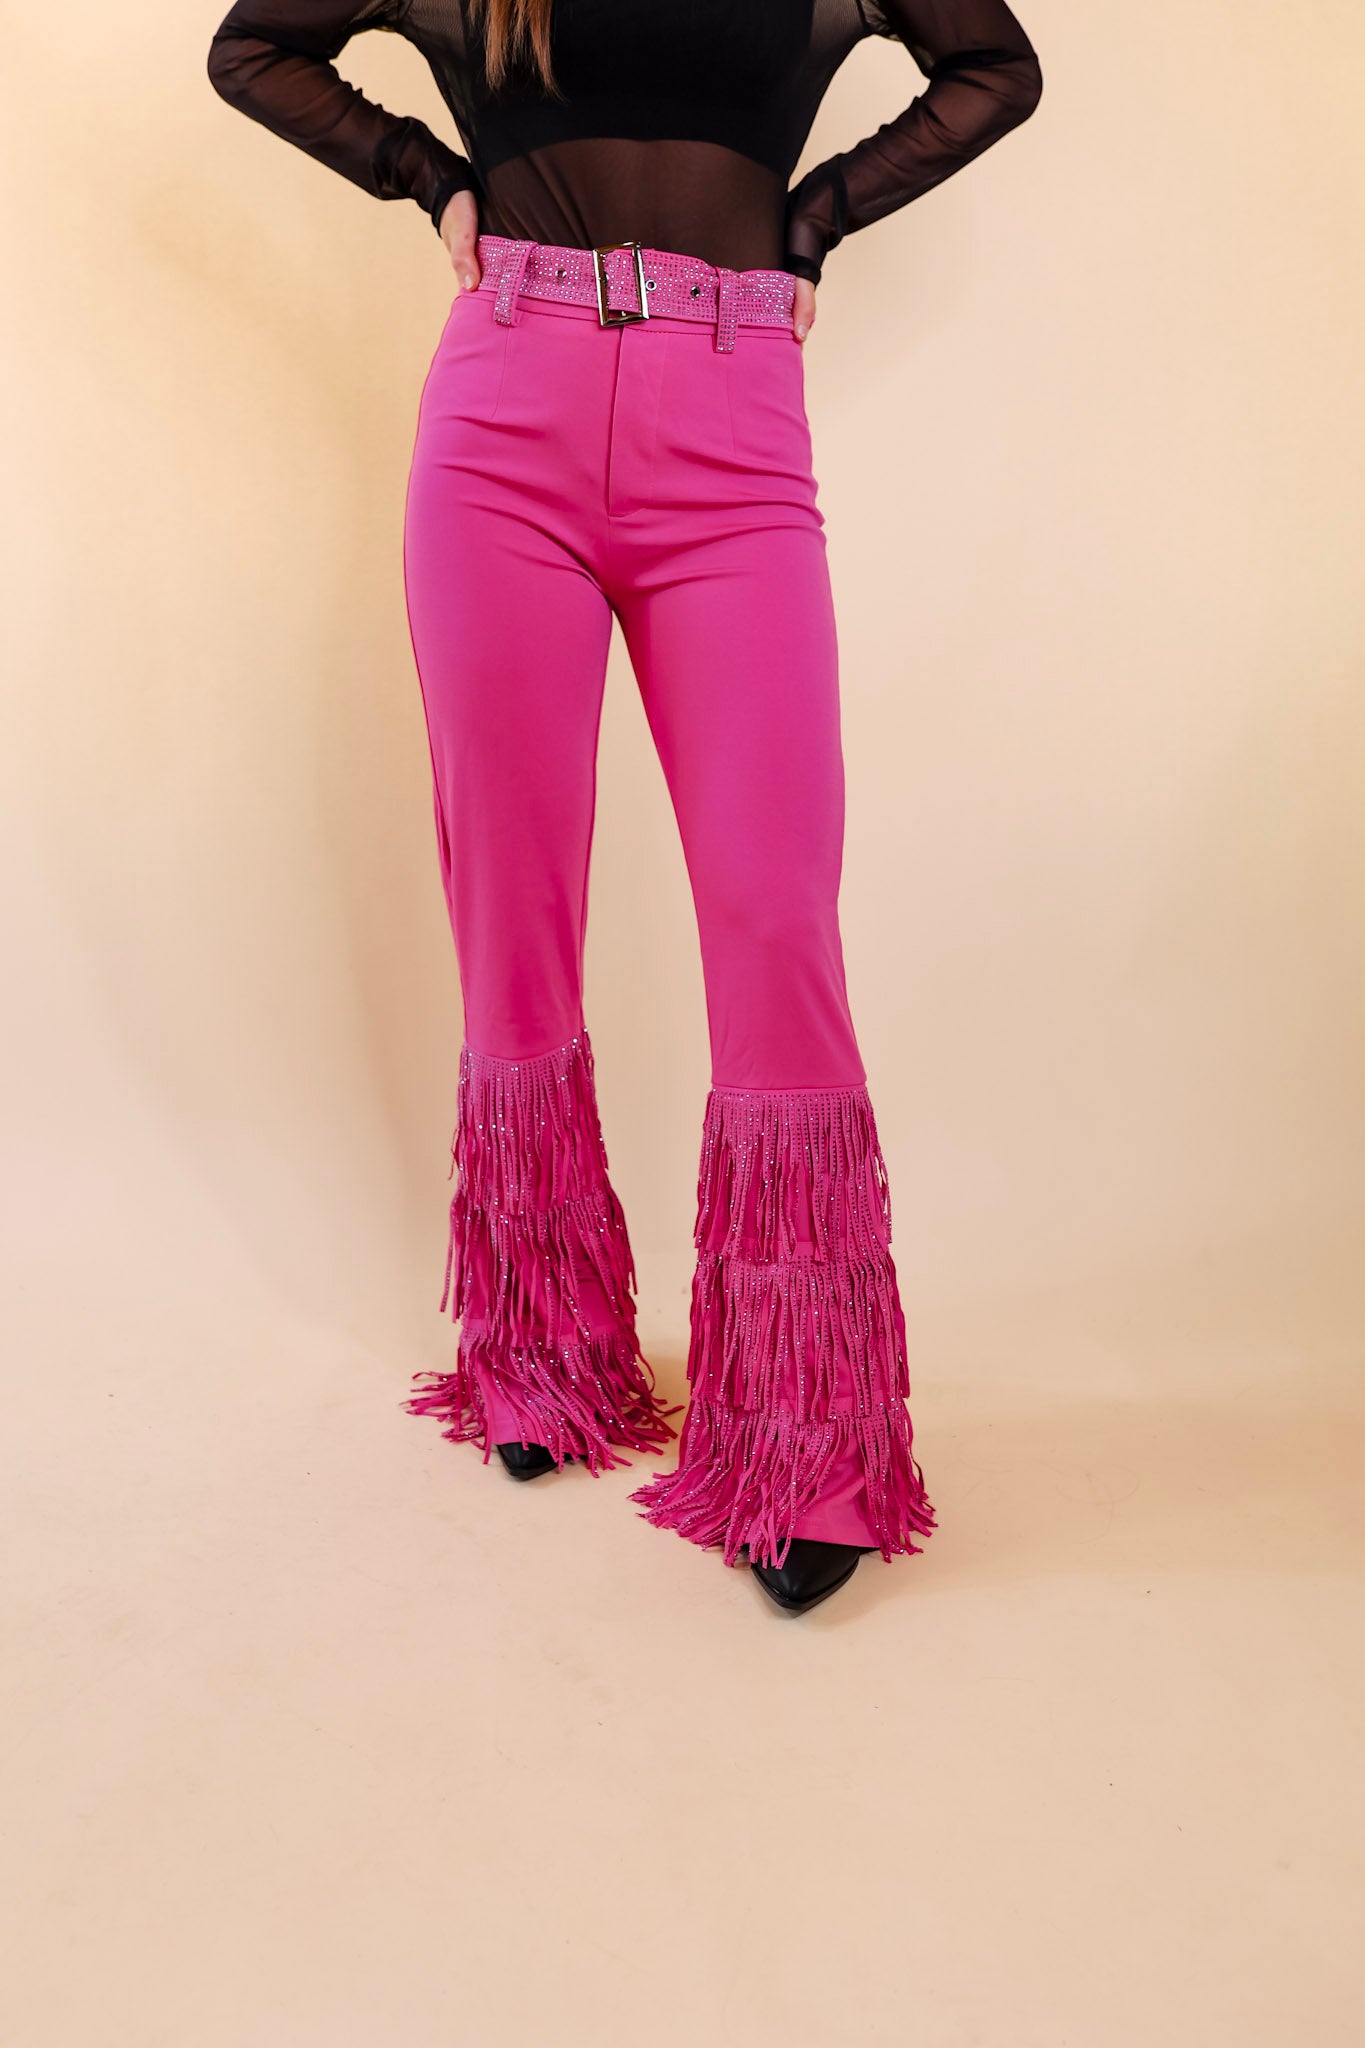 Cowboy Killer Crystal Fringe Bell Bottom Pants in Pink - Giddy Up Glamour Boutique